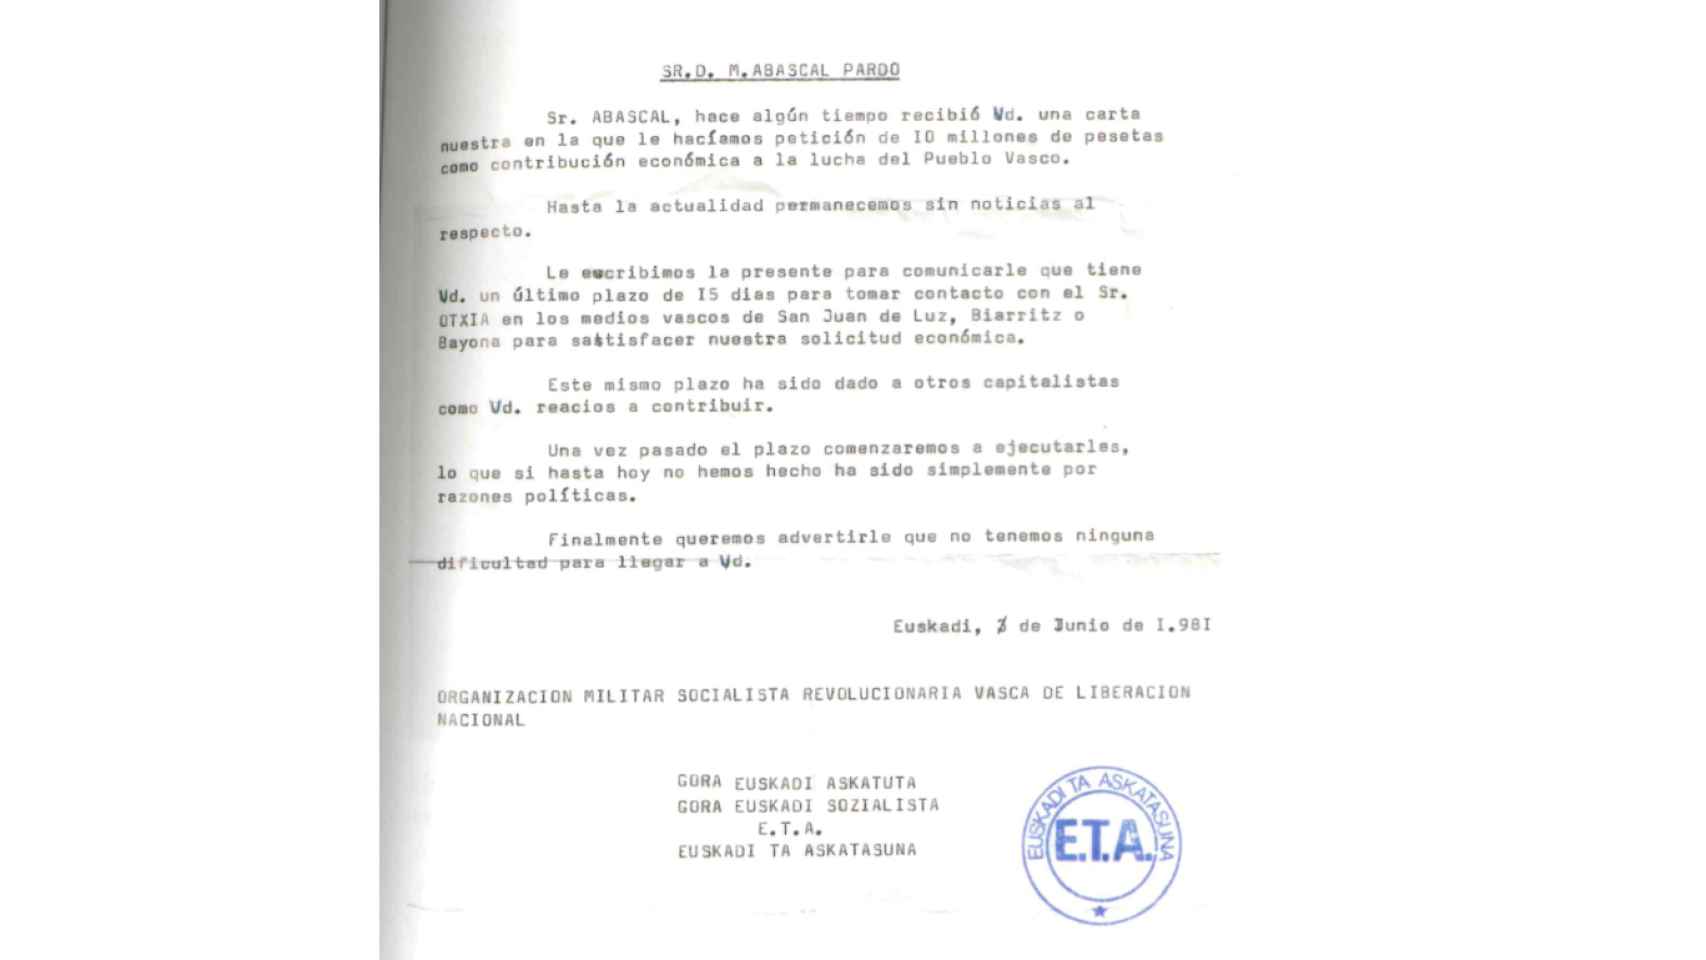 Carta de amenaza a Manolo Abascal remitida por ETA, en 1981.